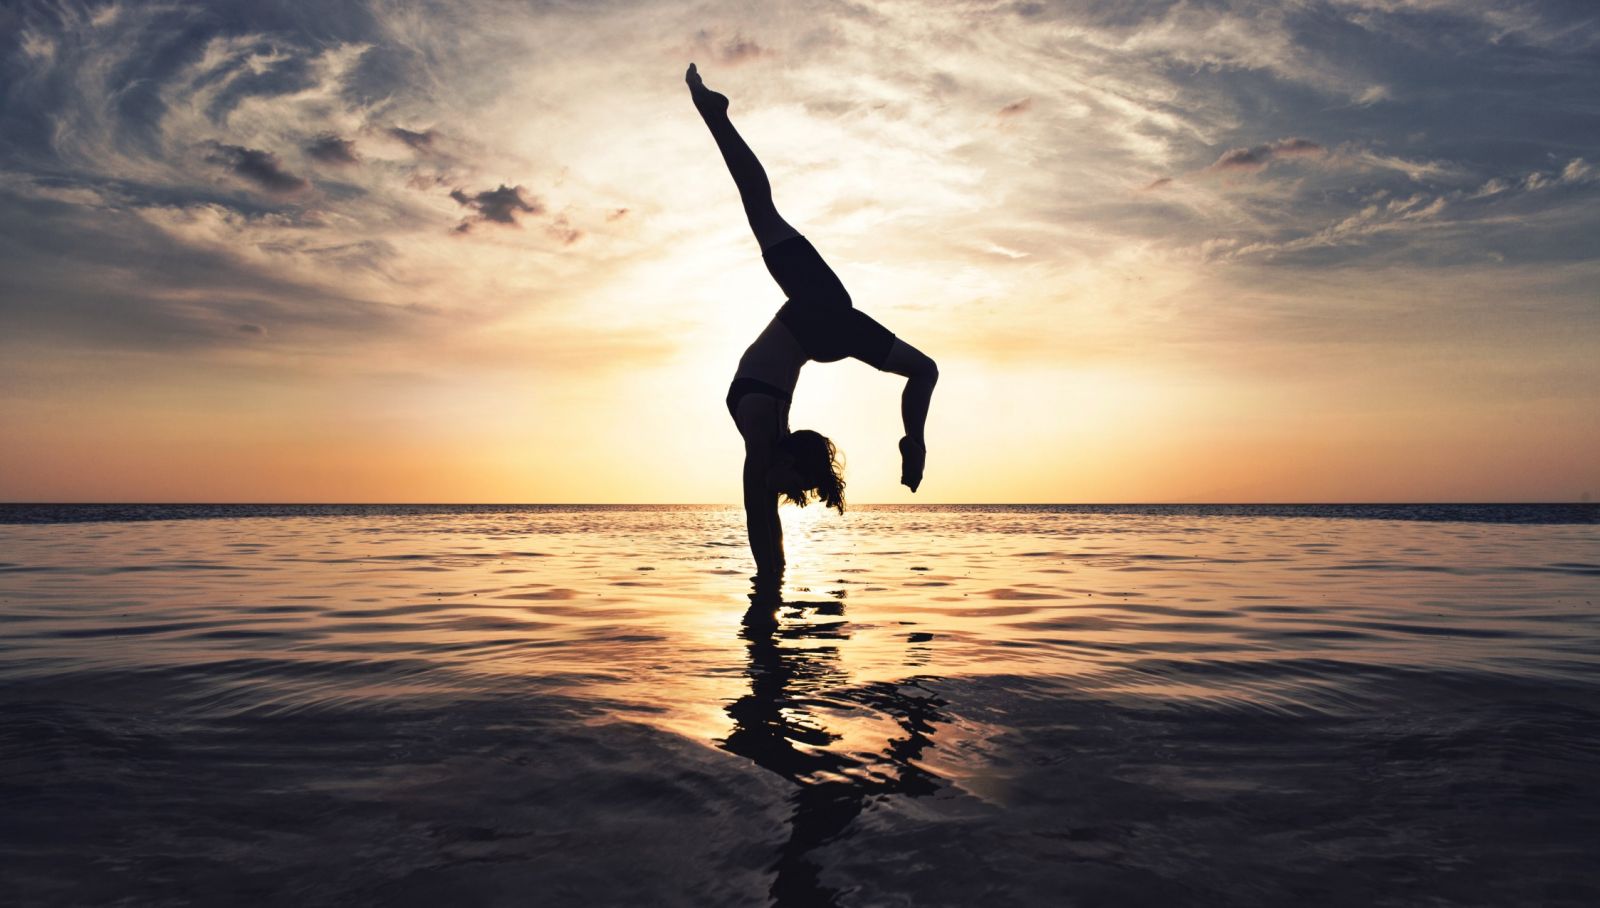 Обучение танцам. Как йога помогает стать лучшим танцором